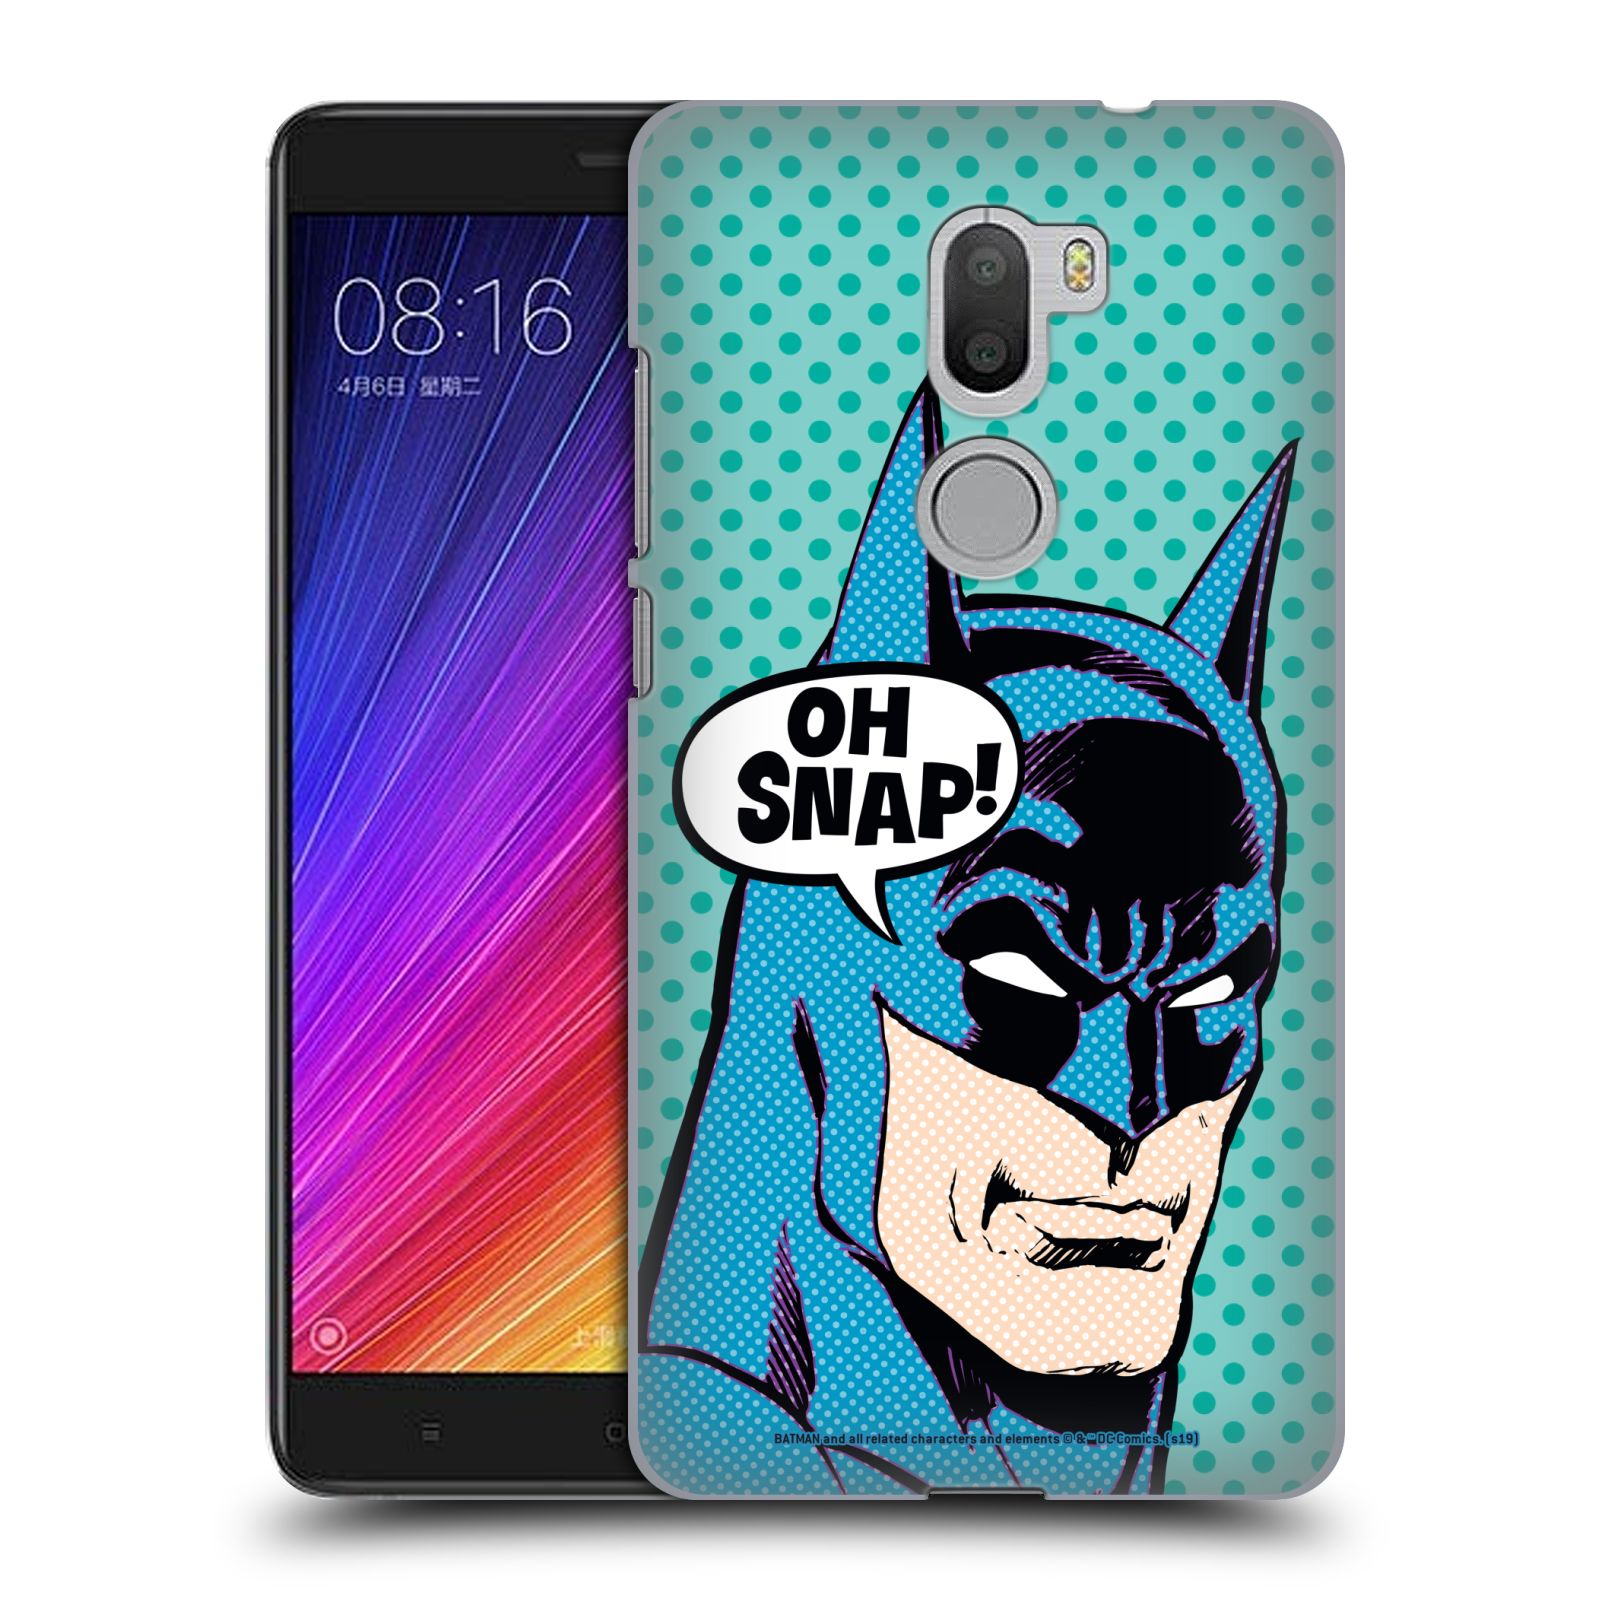 Pouzdro na mobil Xiaomi Mi5s PLUS - HEAD CASE - DC komix Batman Pop Art tvář